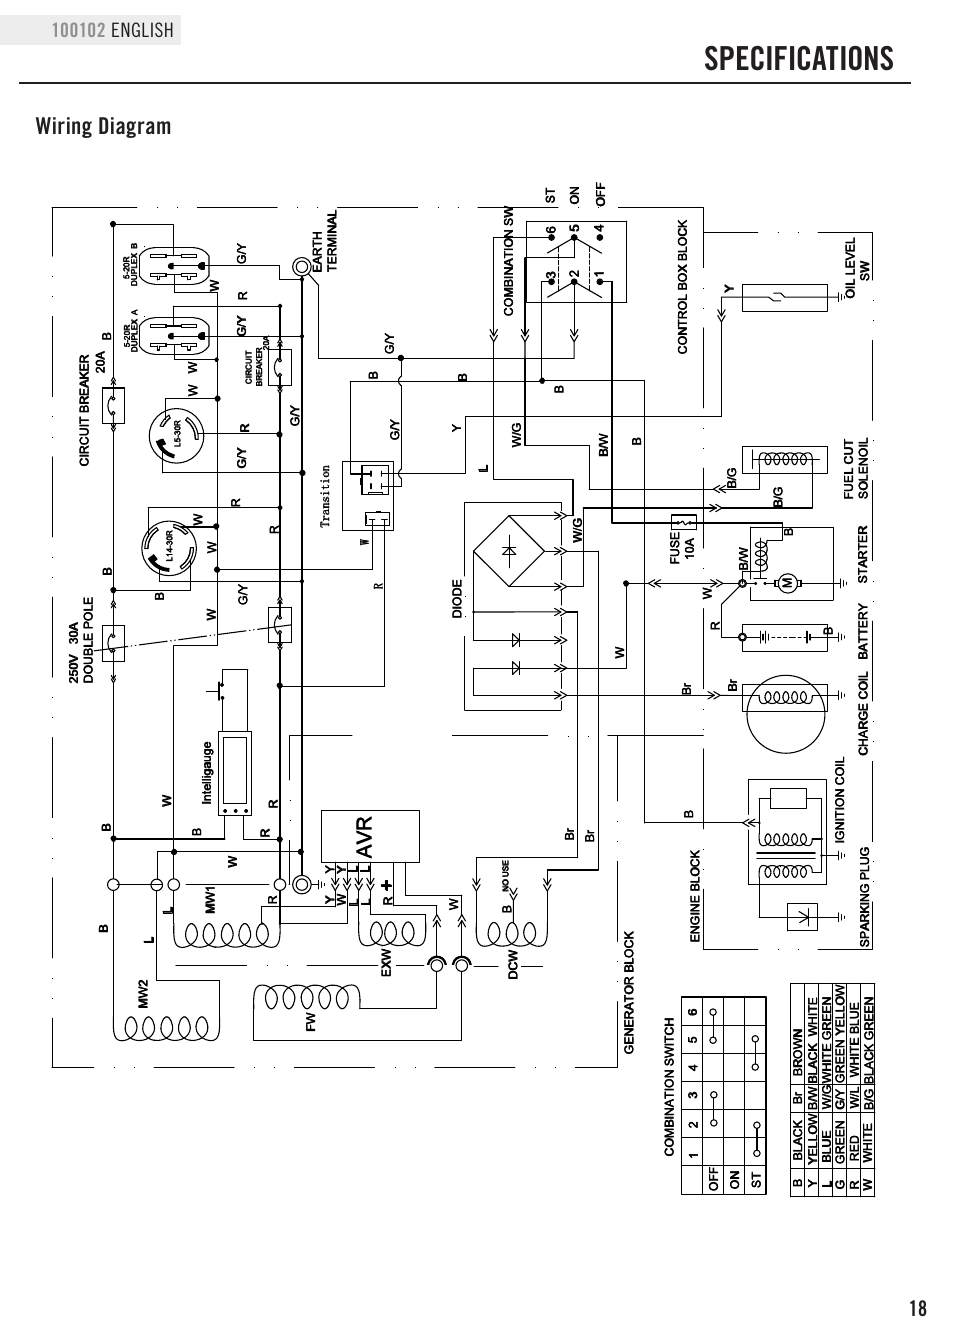 Wiring Diagram Champion Generator Wiring Diagram And Schematics